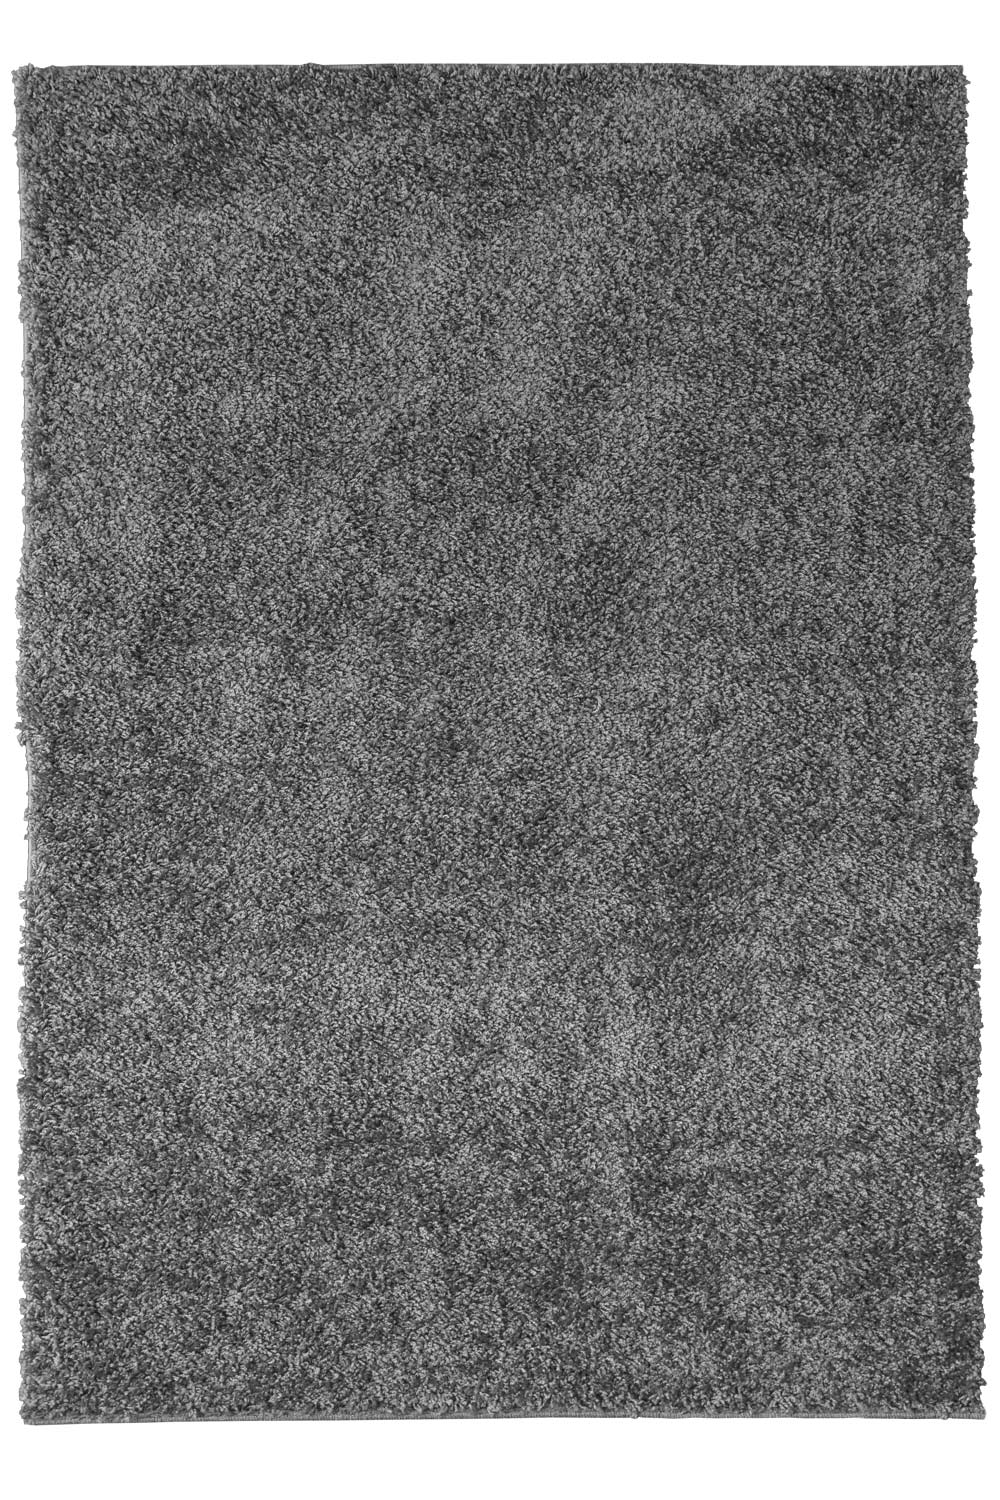 Kusový koberec LIFE SHAGGY 1500 grey 160x230 cm